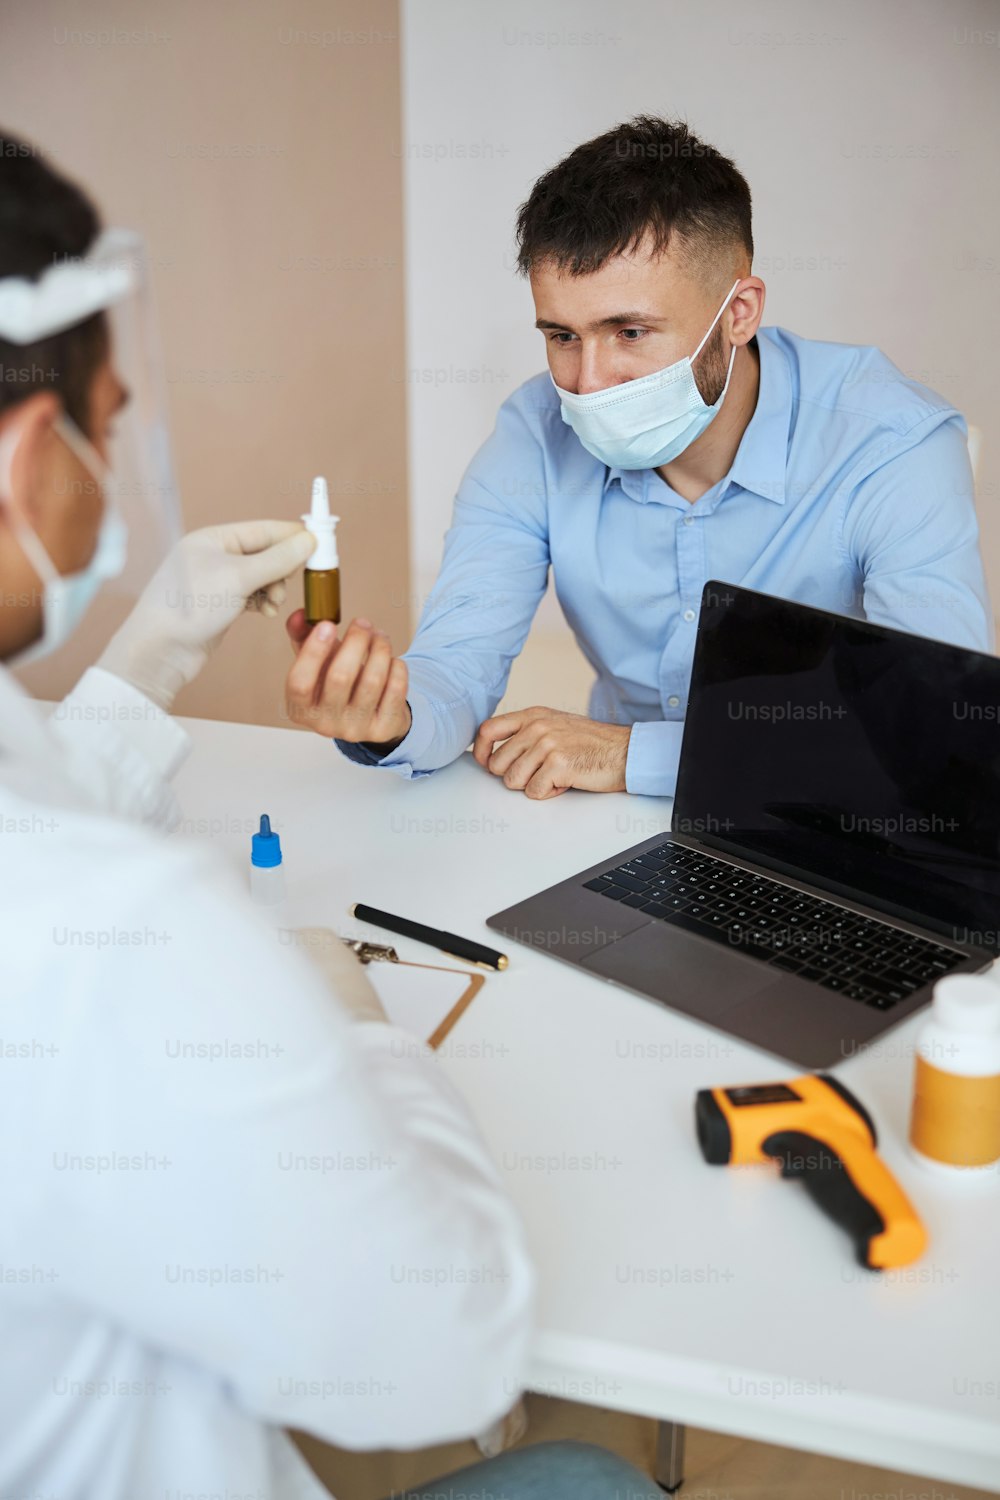 Taillenporträt eines Mannes im blauen Hemd in Medizinmaske, der mit dem Therapeuten spricht, während er eine Kur im Arztkabinett in Betracht zieht